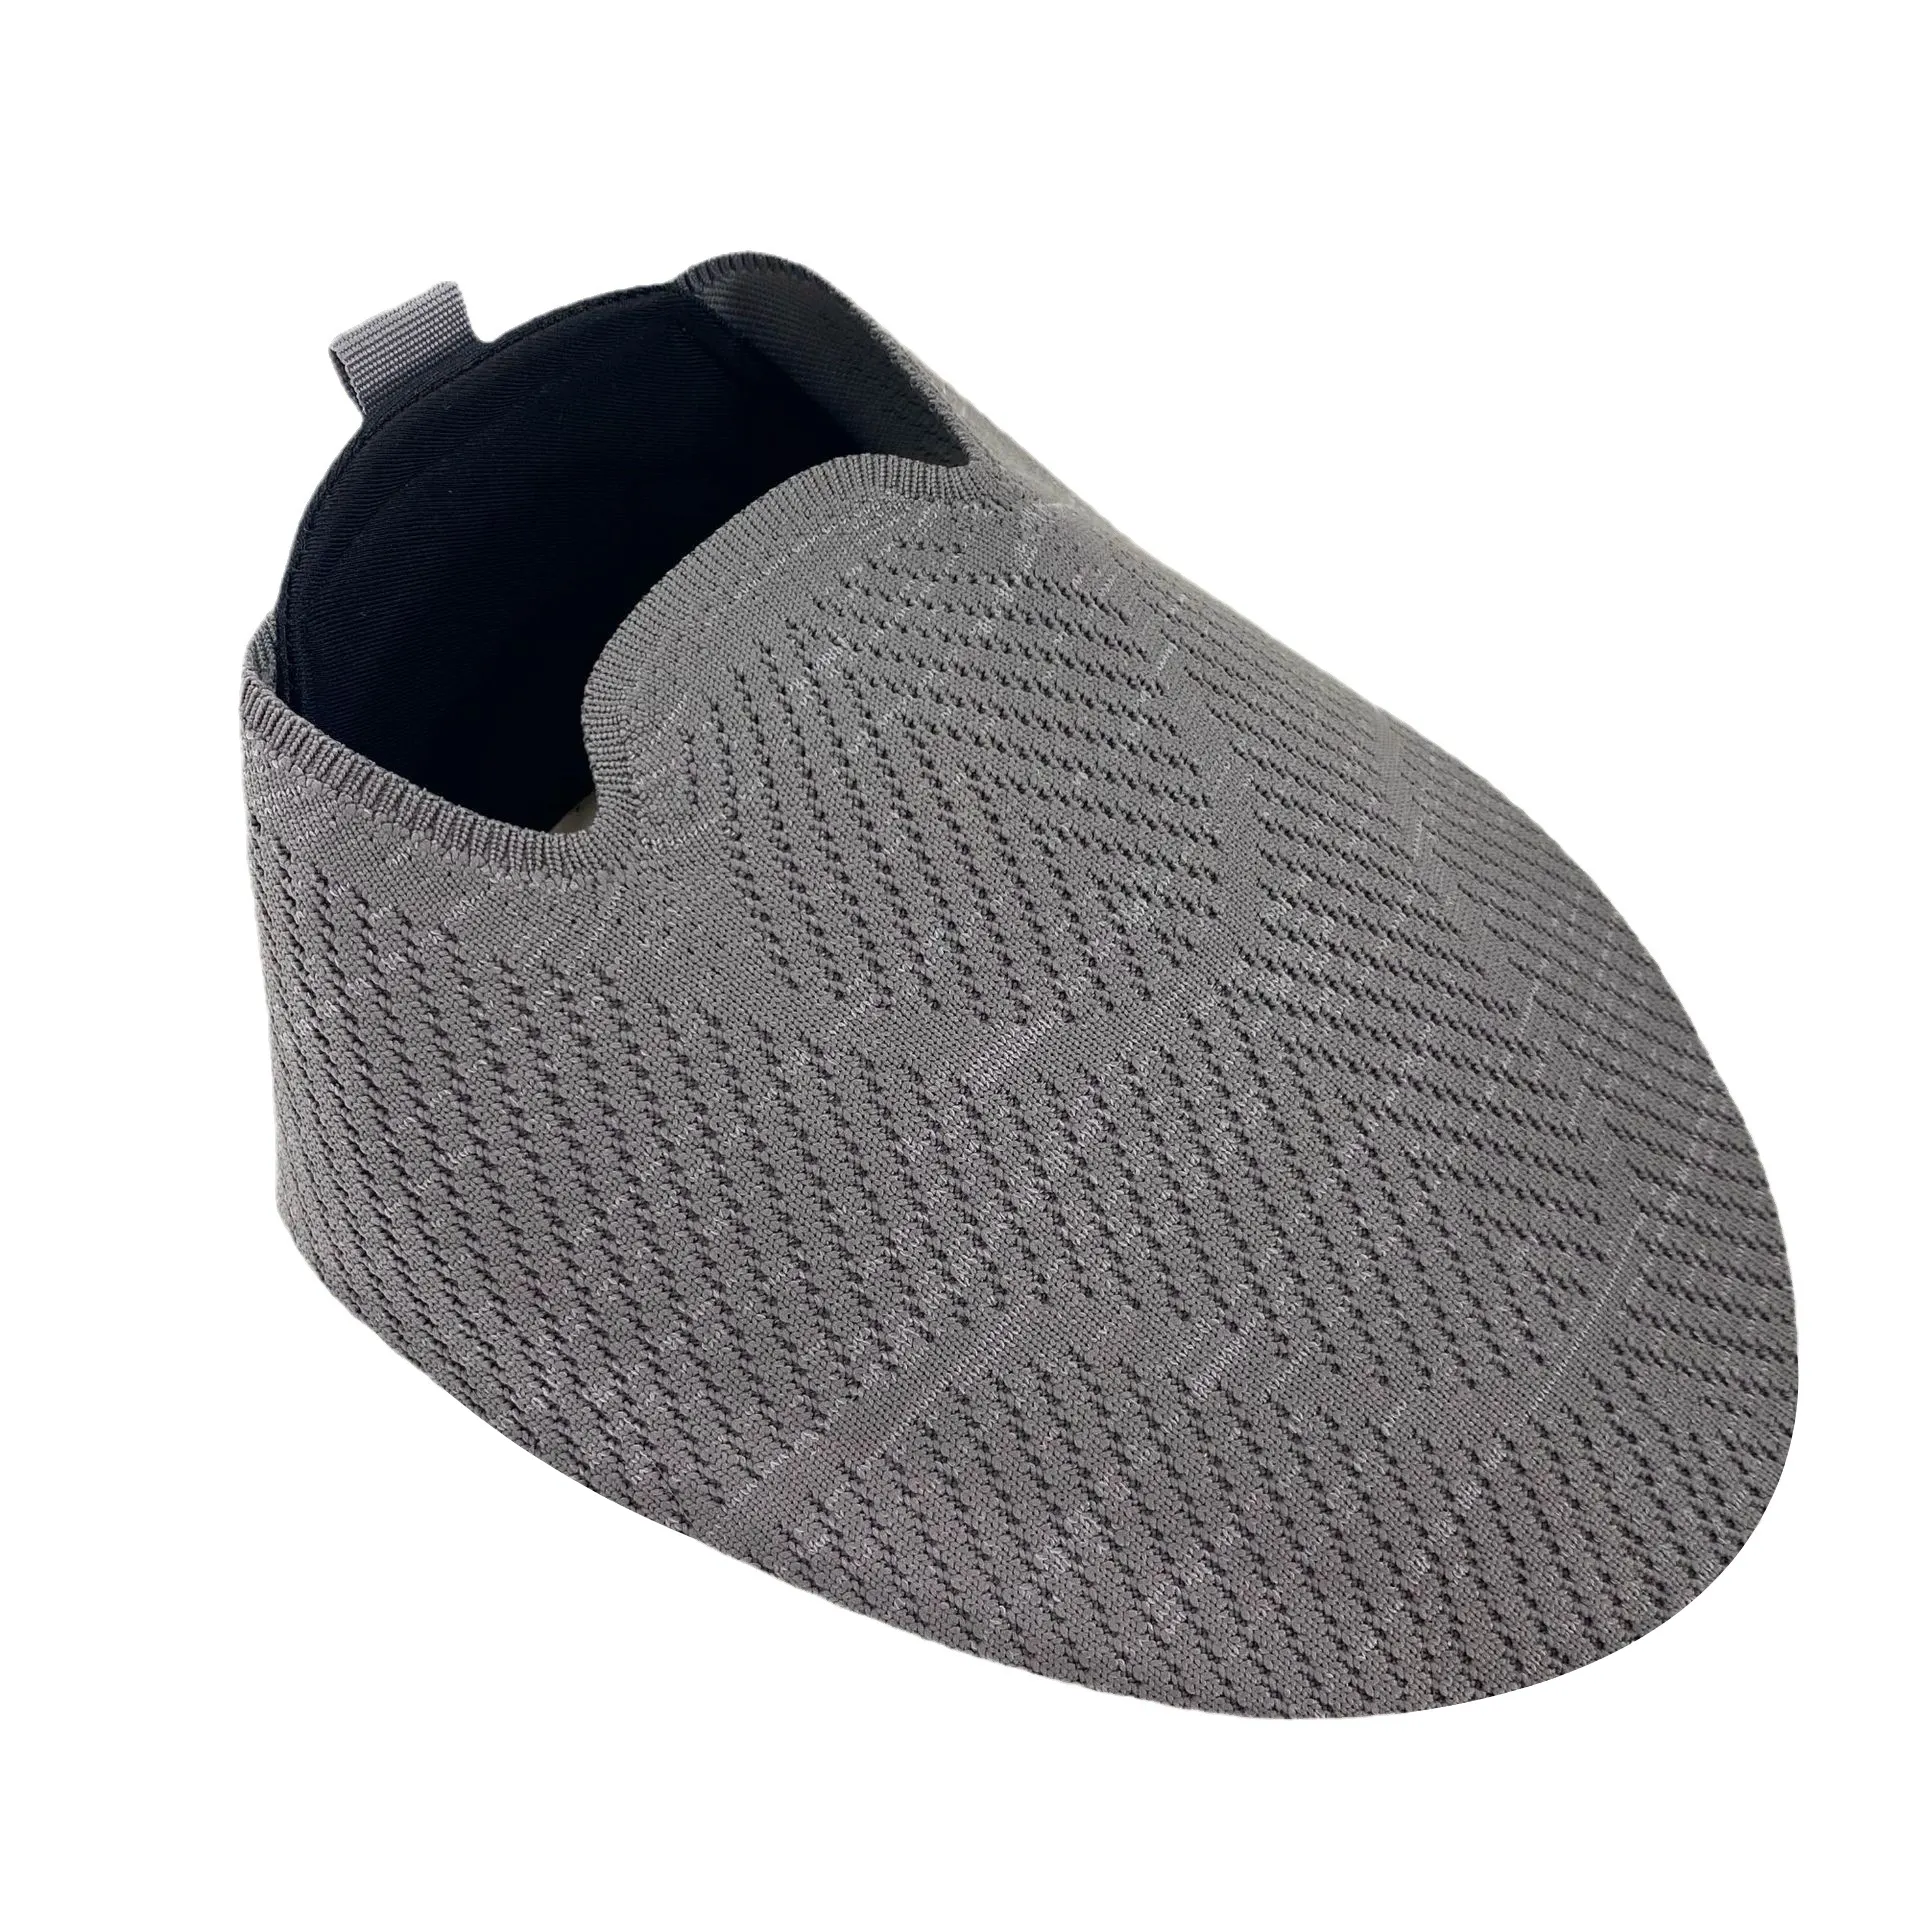 Nuevo estilo personalizado barato de malla de punto superior al por mayor zapatos deportivos semiacabados transpirable zapato tejido superior